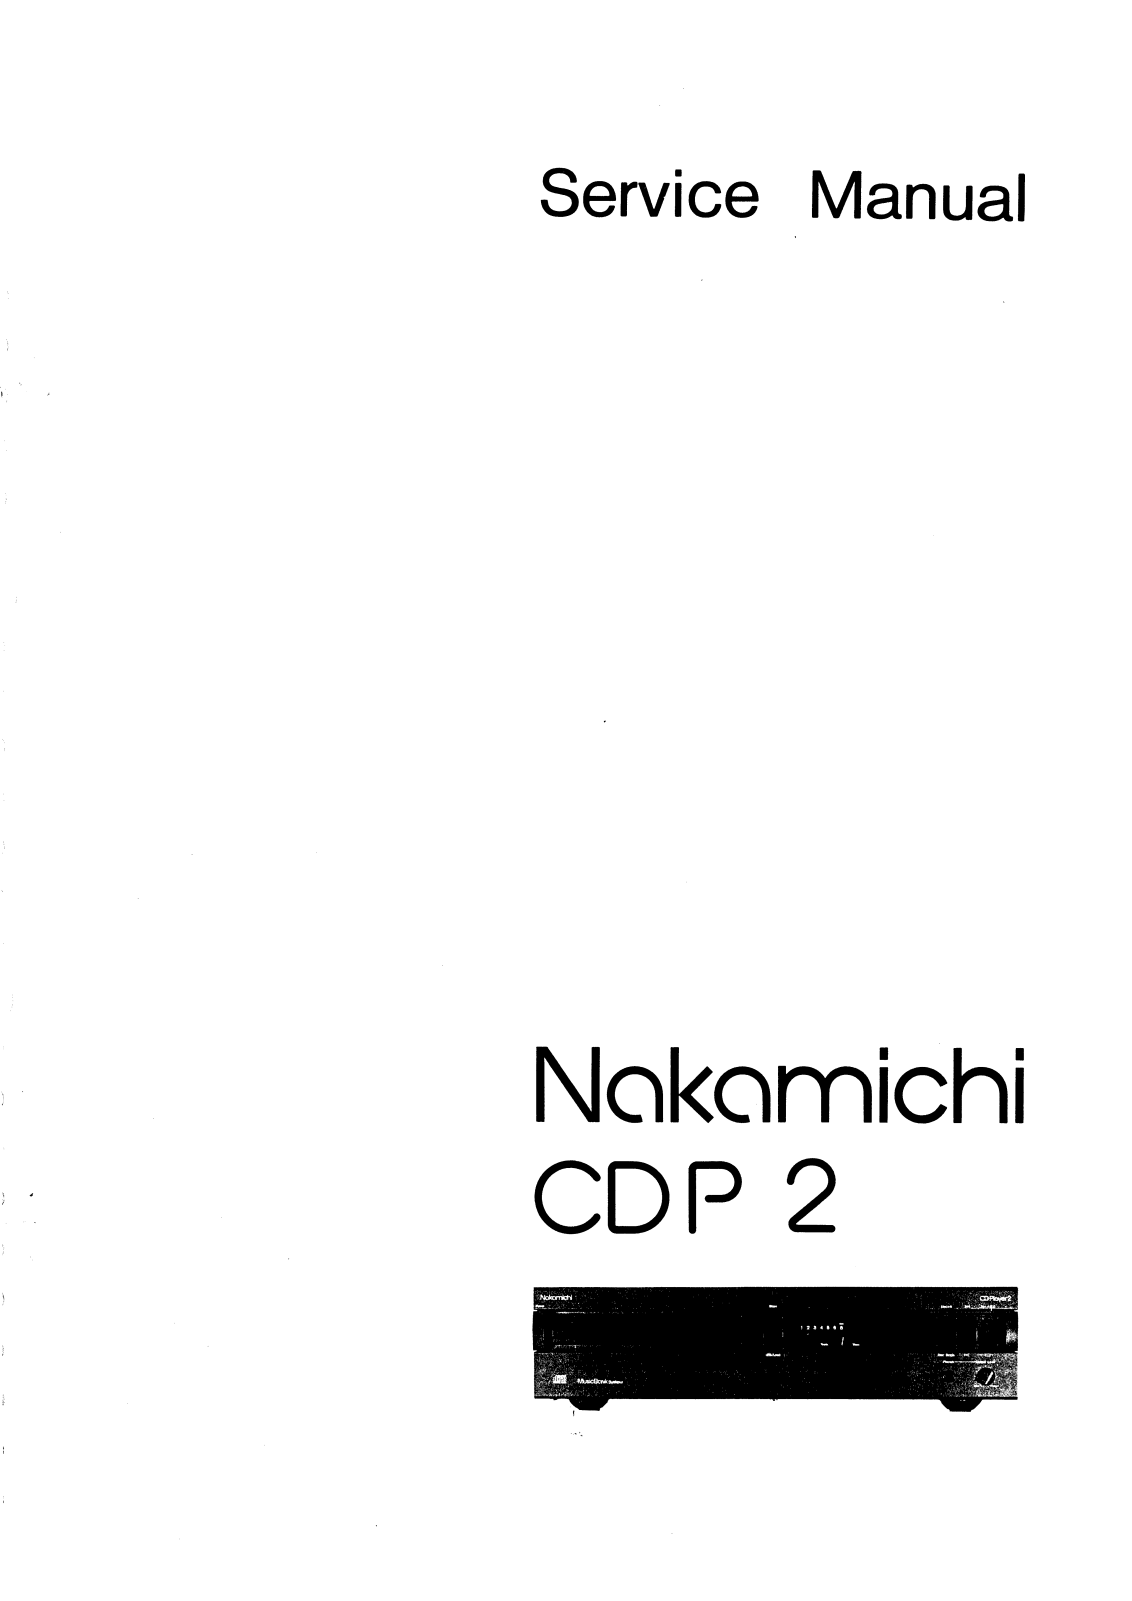 Nakamichi CD-Player-2 Service Manual